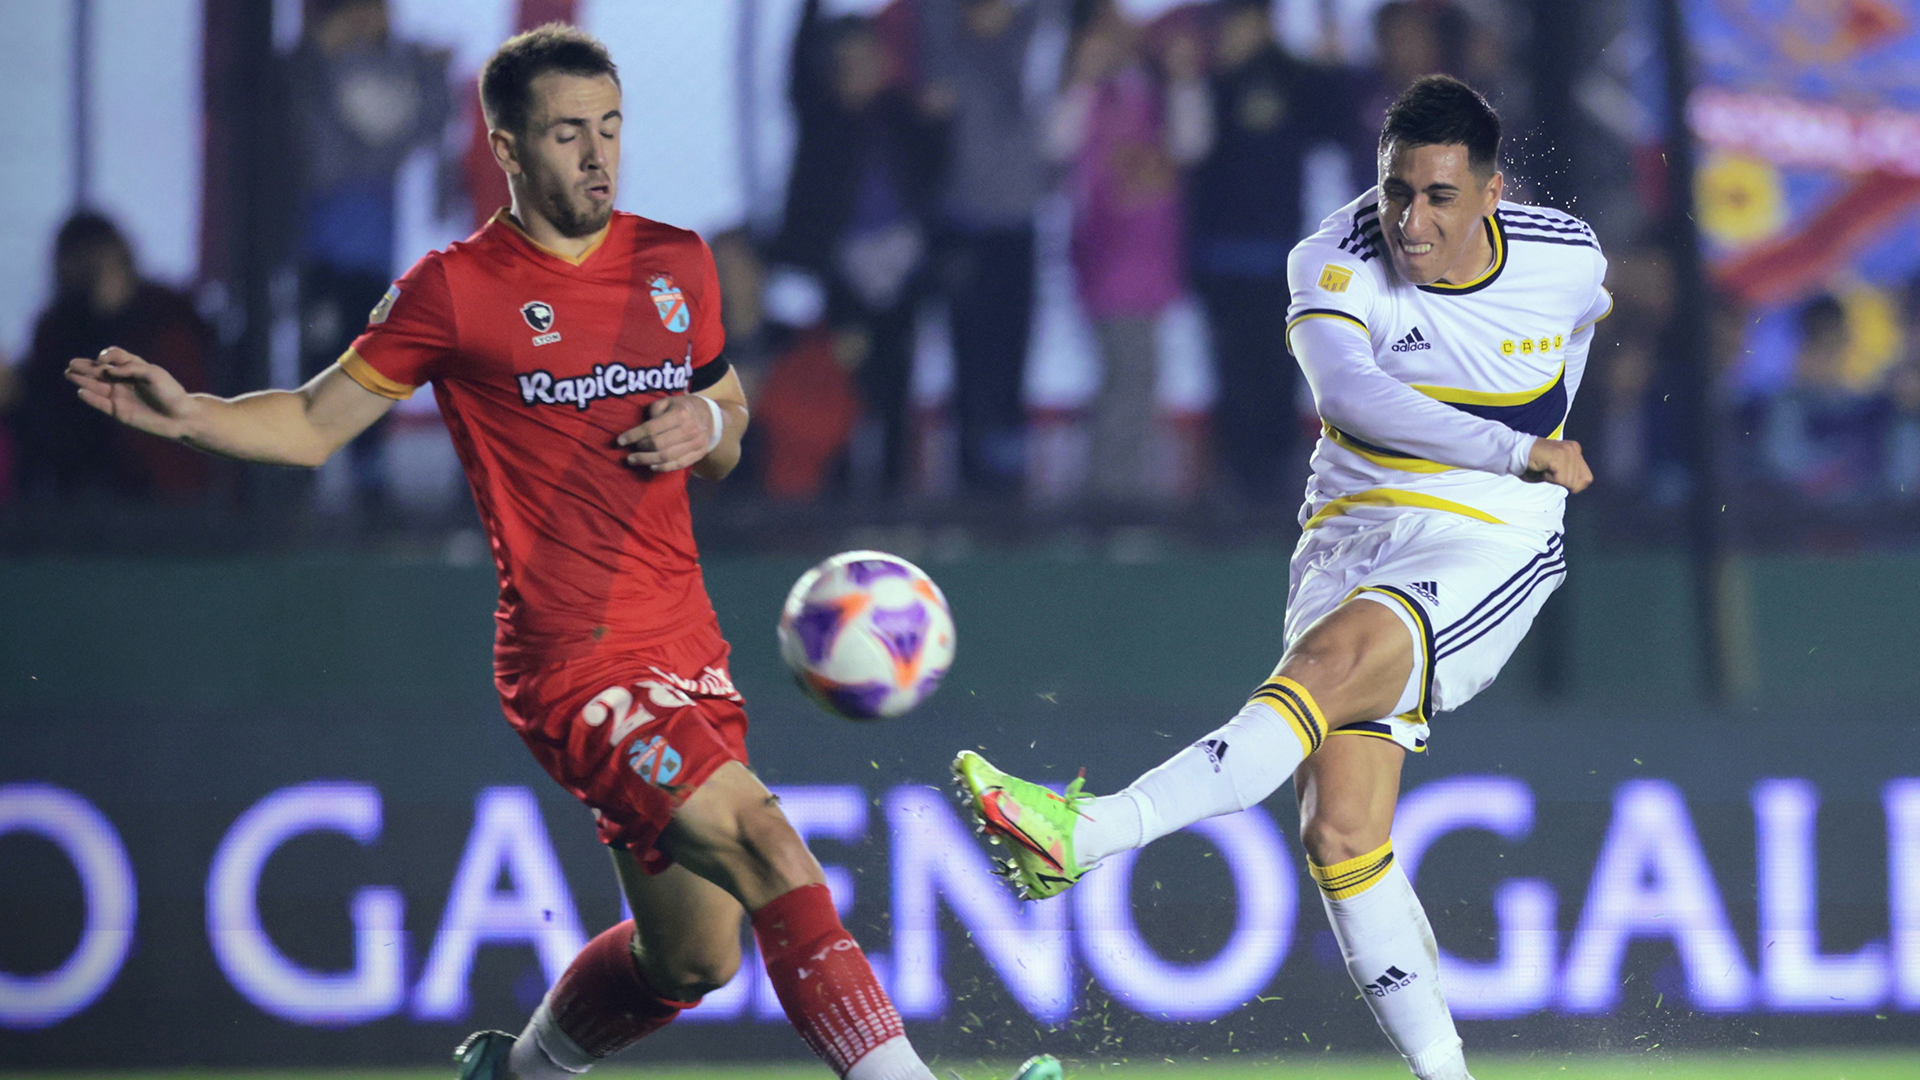 Con un gol de taco de Joaquín Pombo, Arsenal sorprende a Boca Juniors y lo vence 1-0 por la Liga Profesional